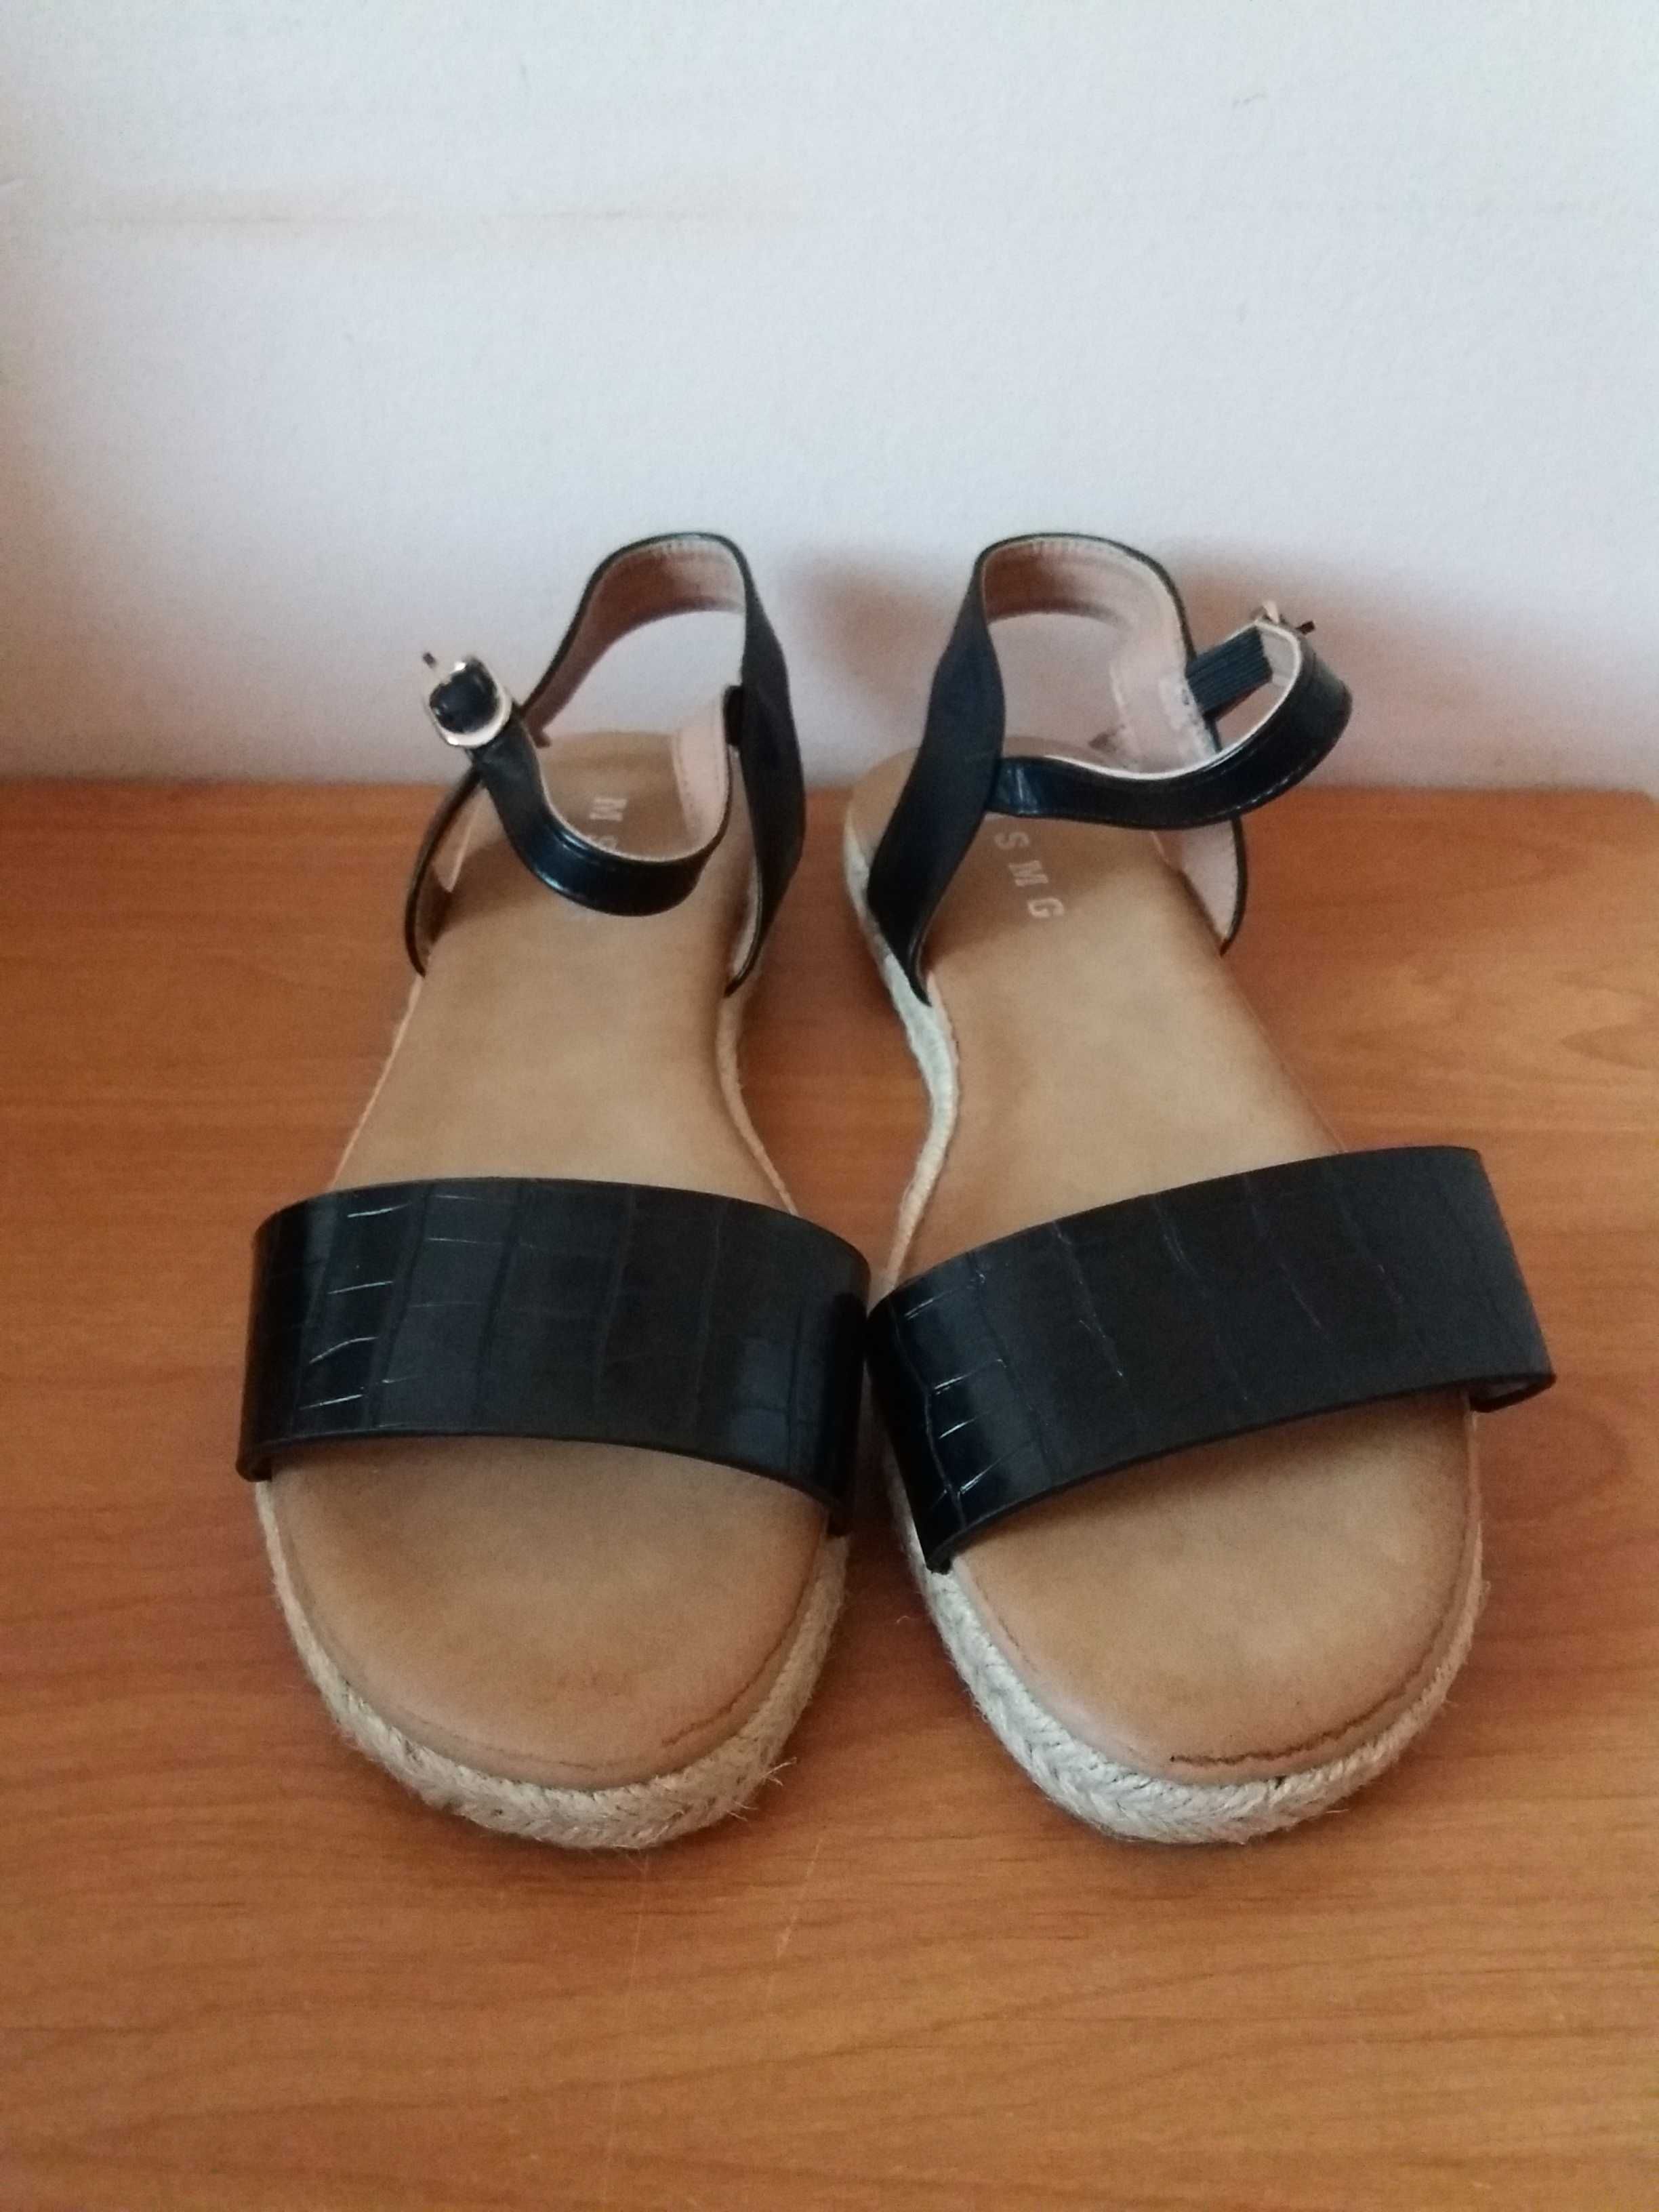 Nowe czarne sandały espadryle 40 wkładka 25.8cm